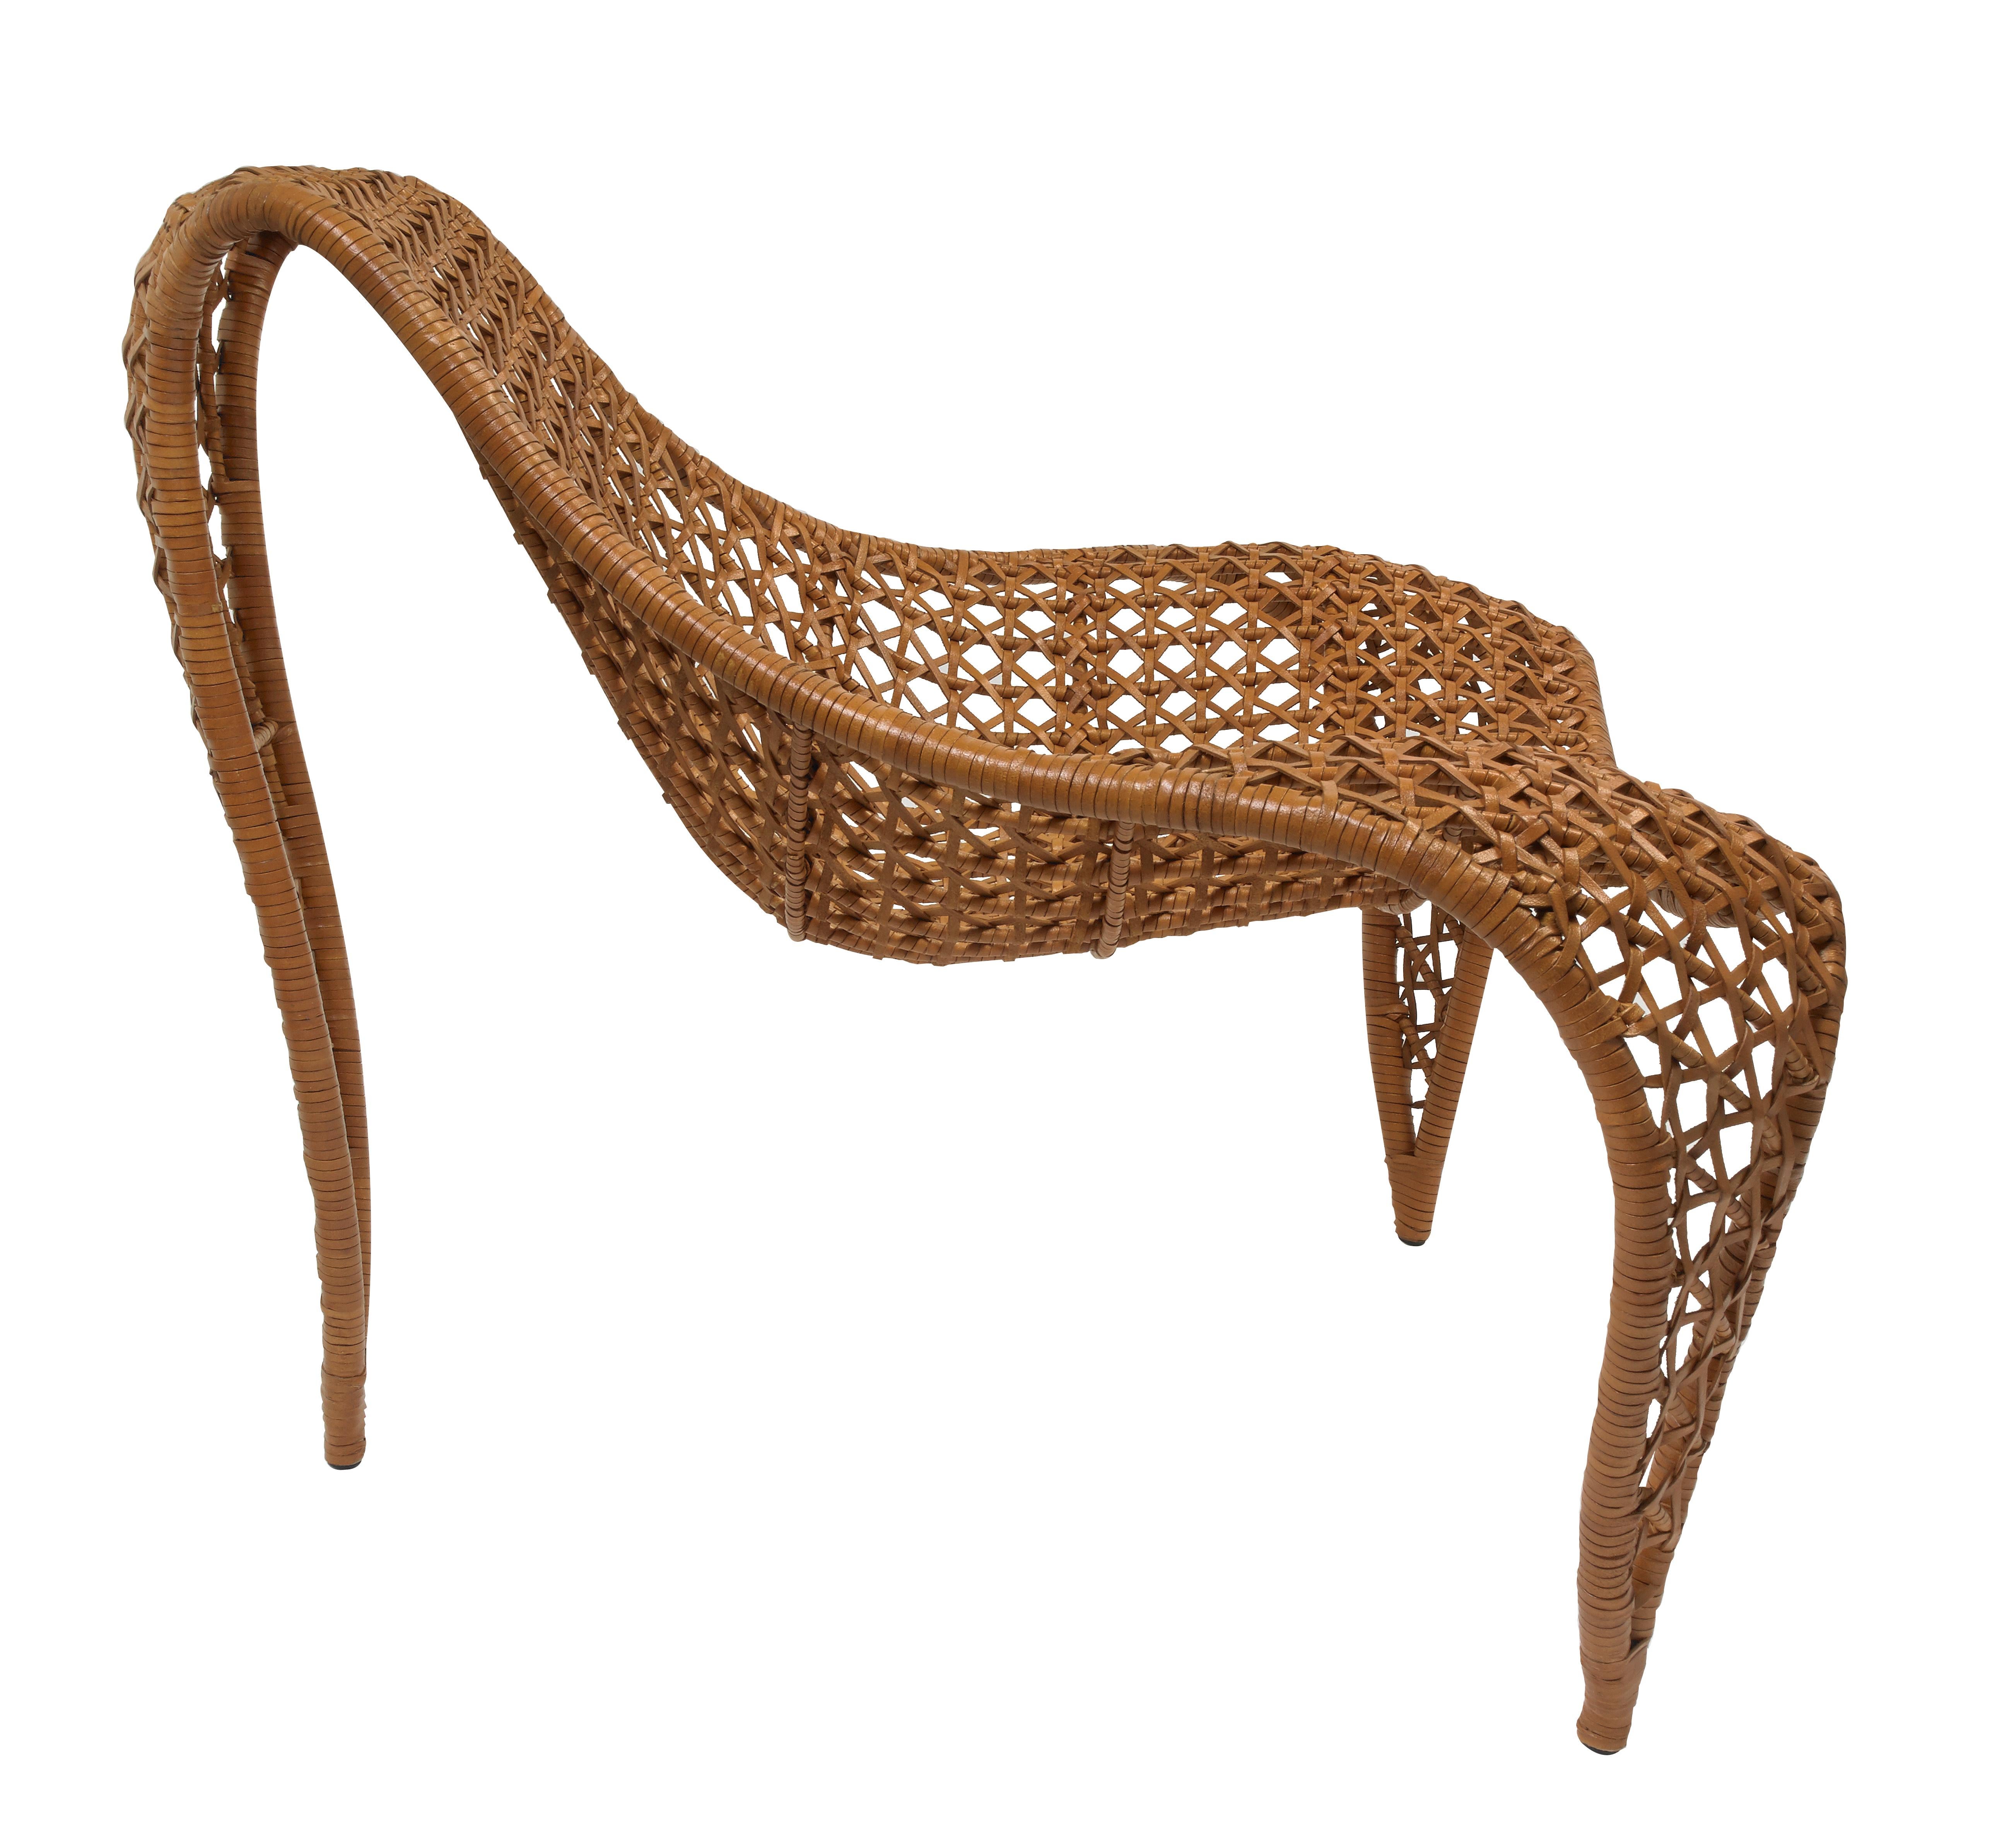 Pour rehausser à la fois le style et le confort, le cuir souple tissé enveloppe gracieusement une chaise aux formes intrigantes.